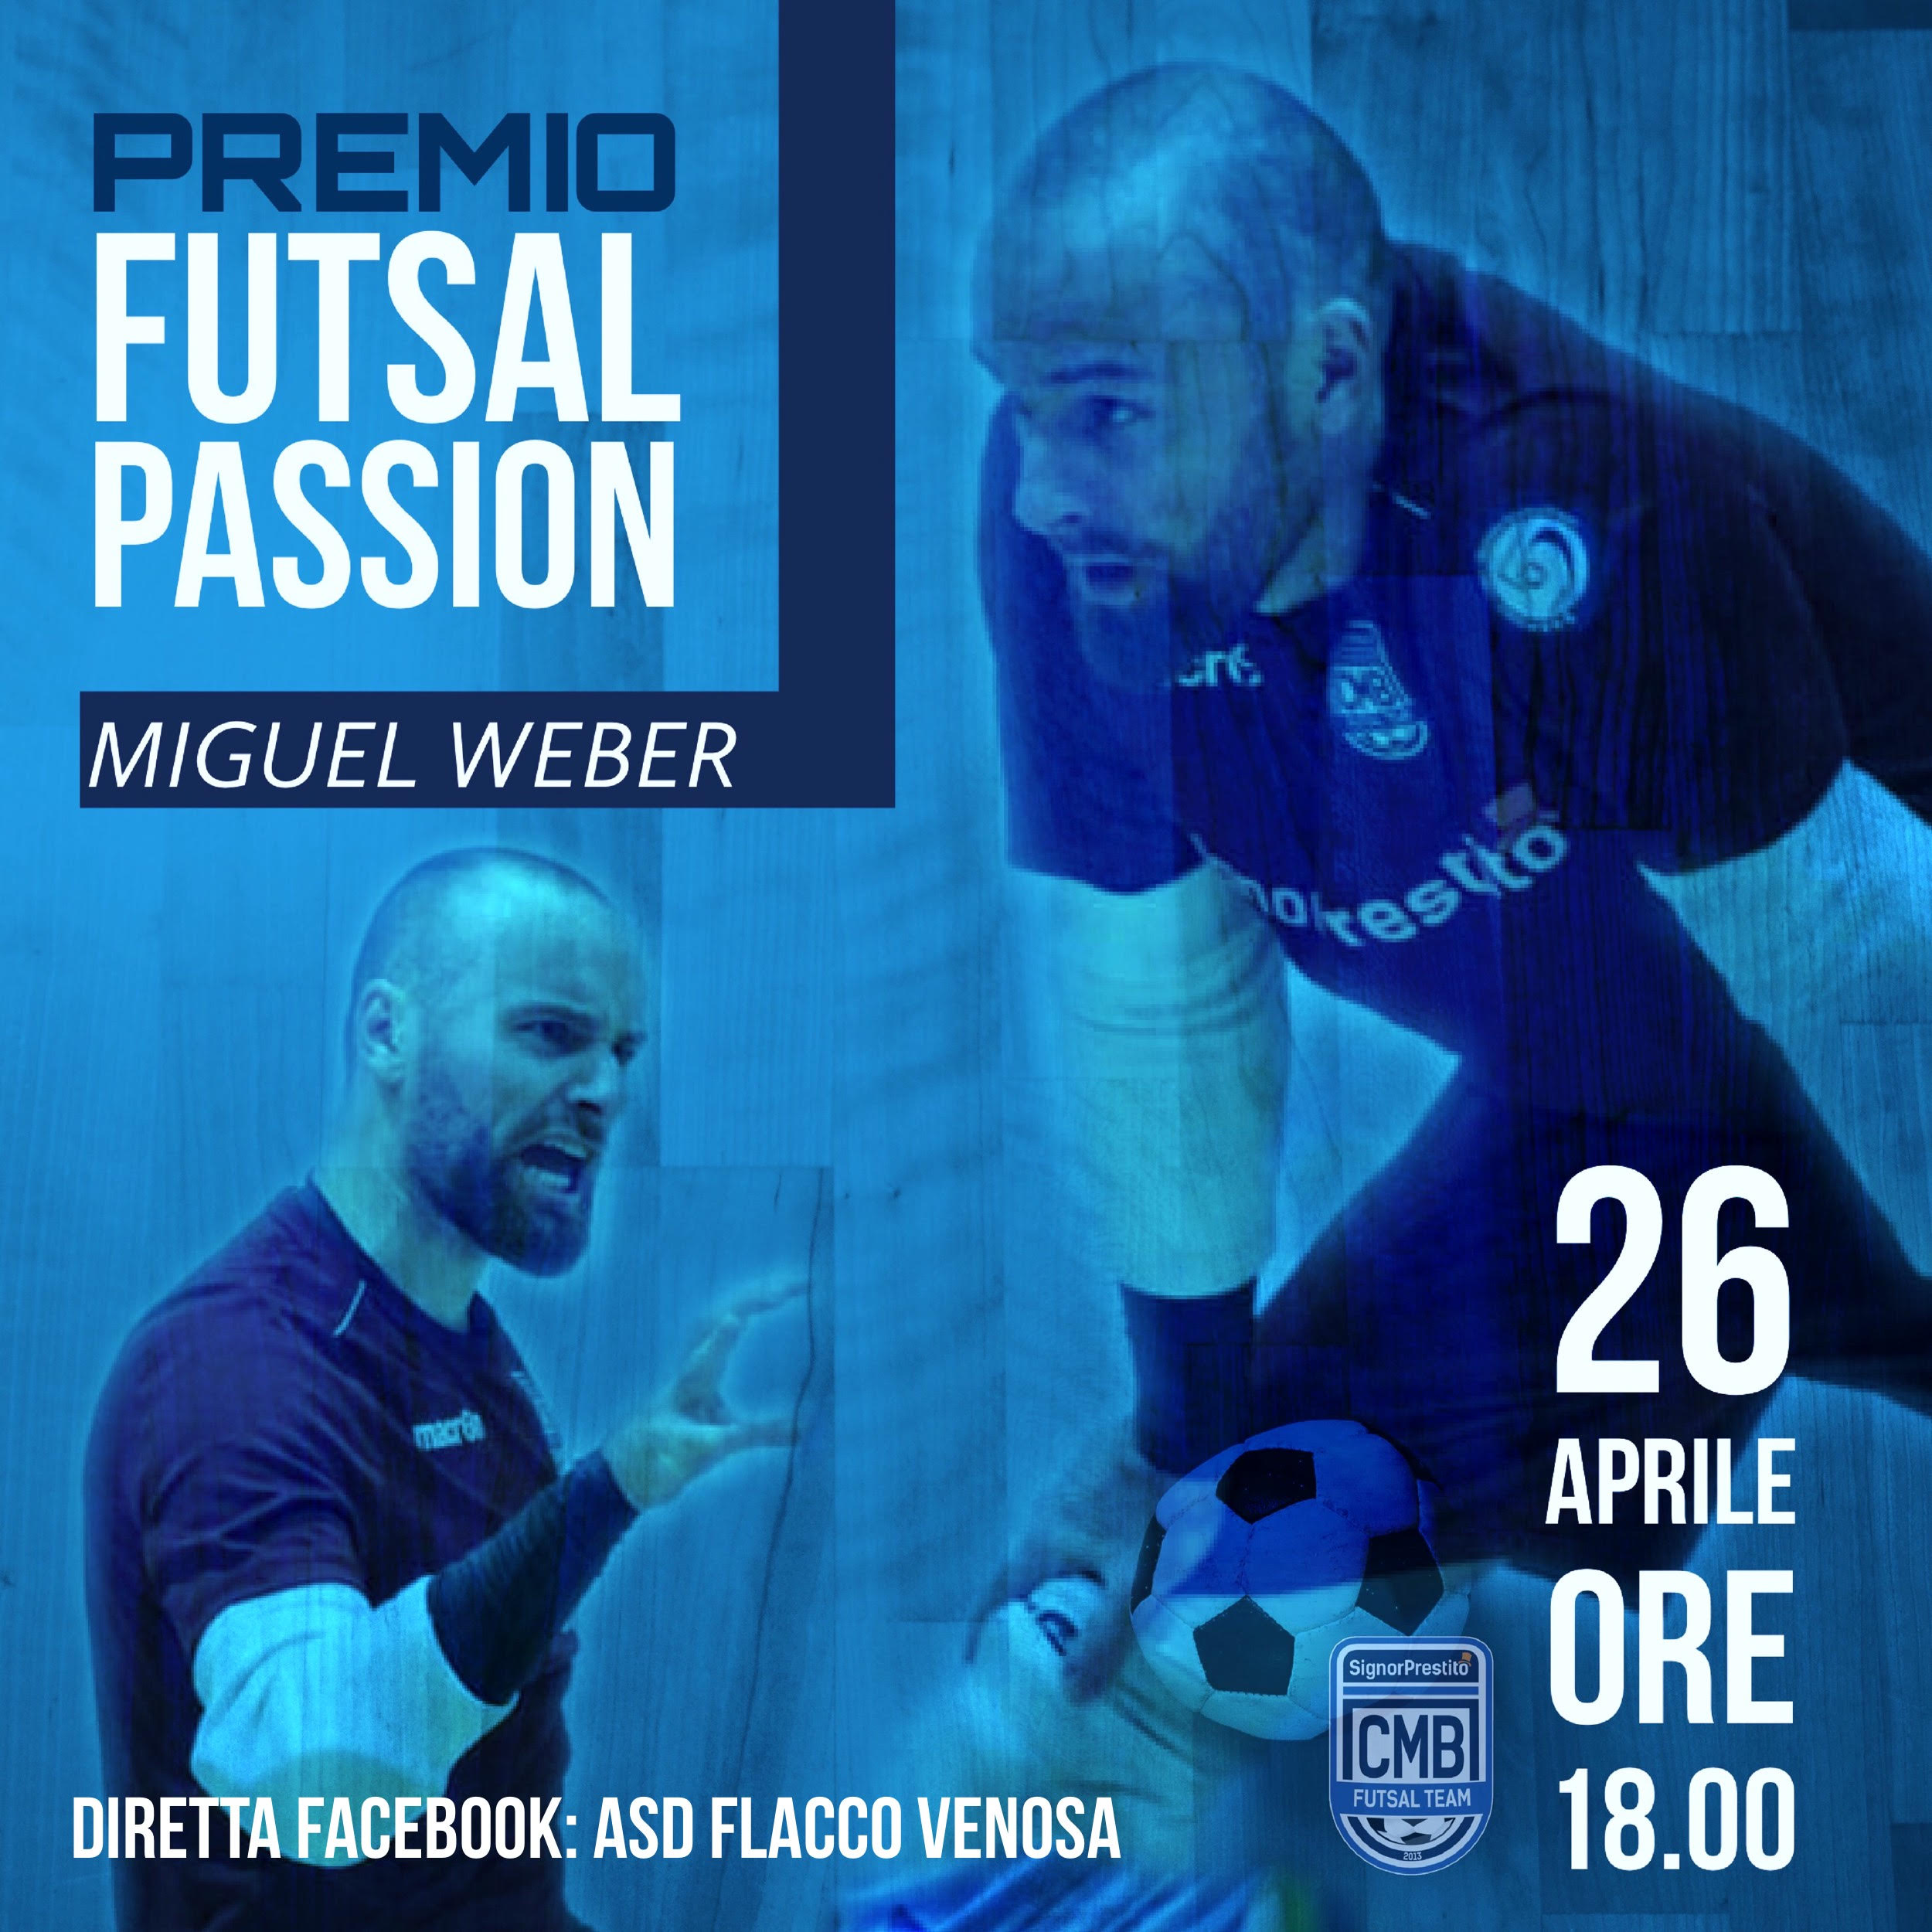 Miguel Weber del Signor Prestito CMB premiato  Futsal Passion edizione 2020 – categoria portieri